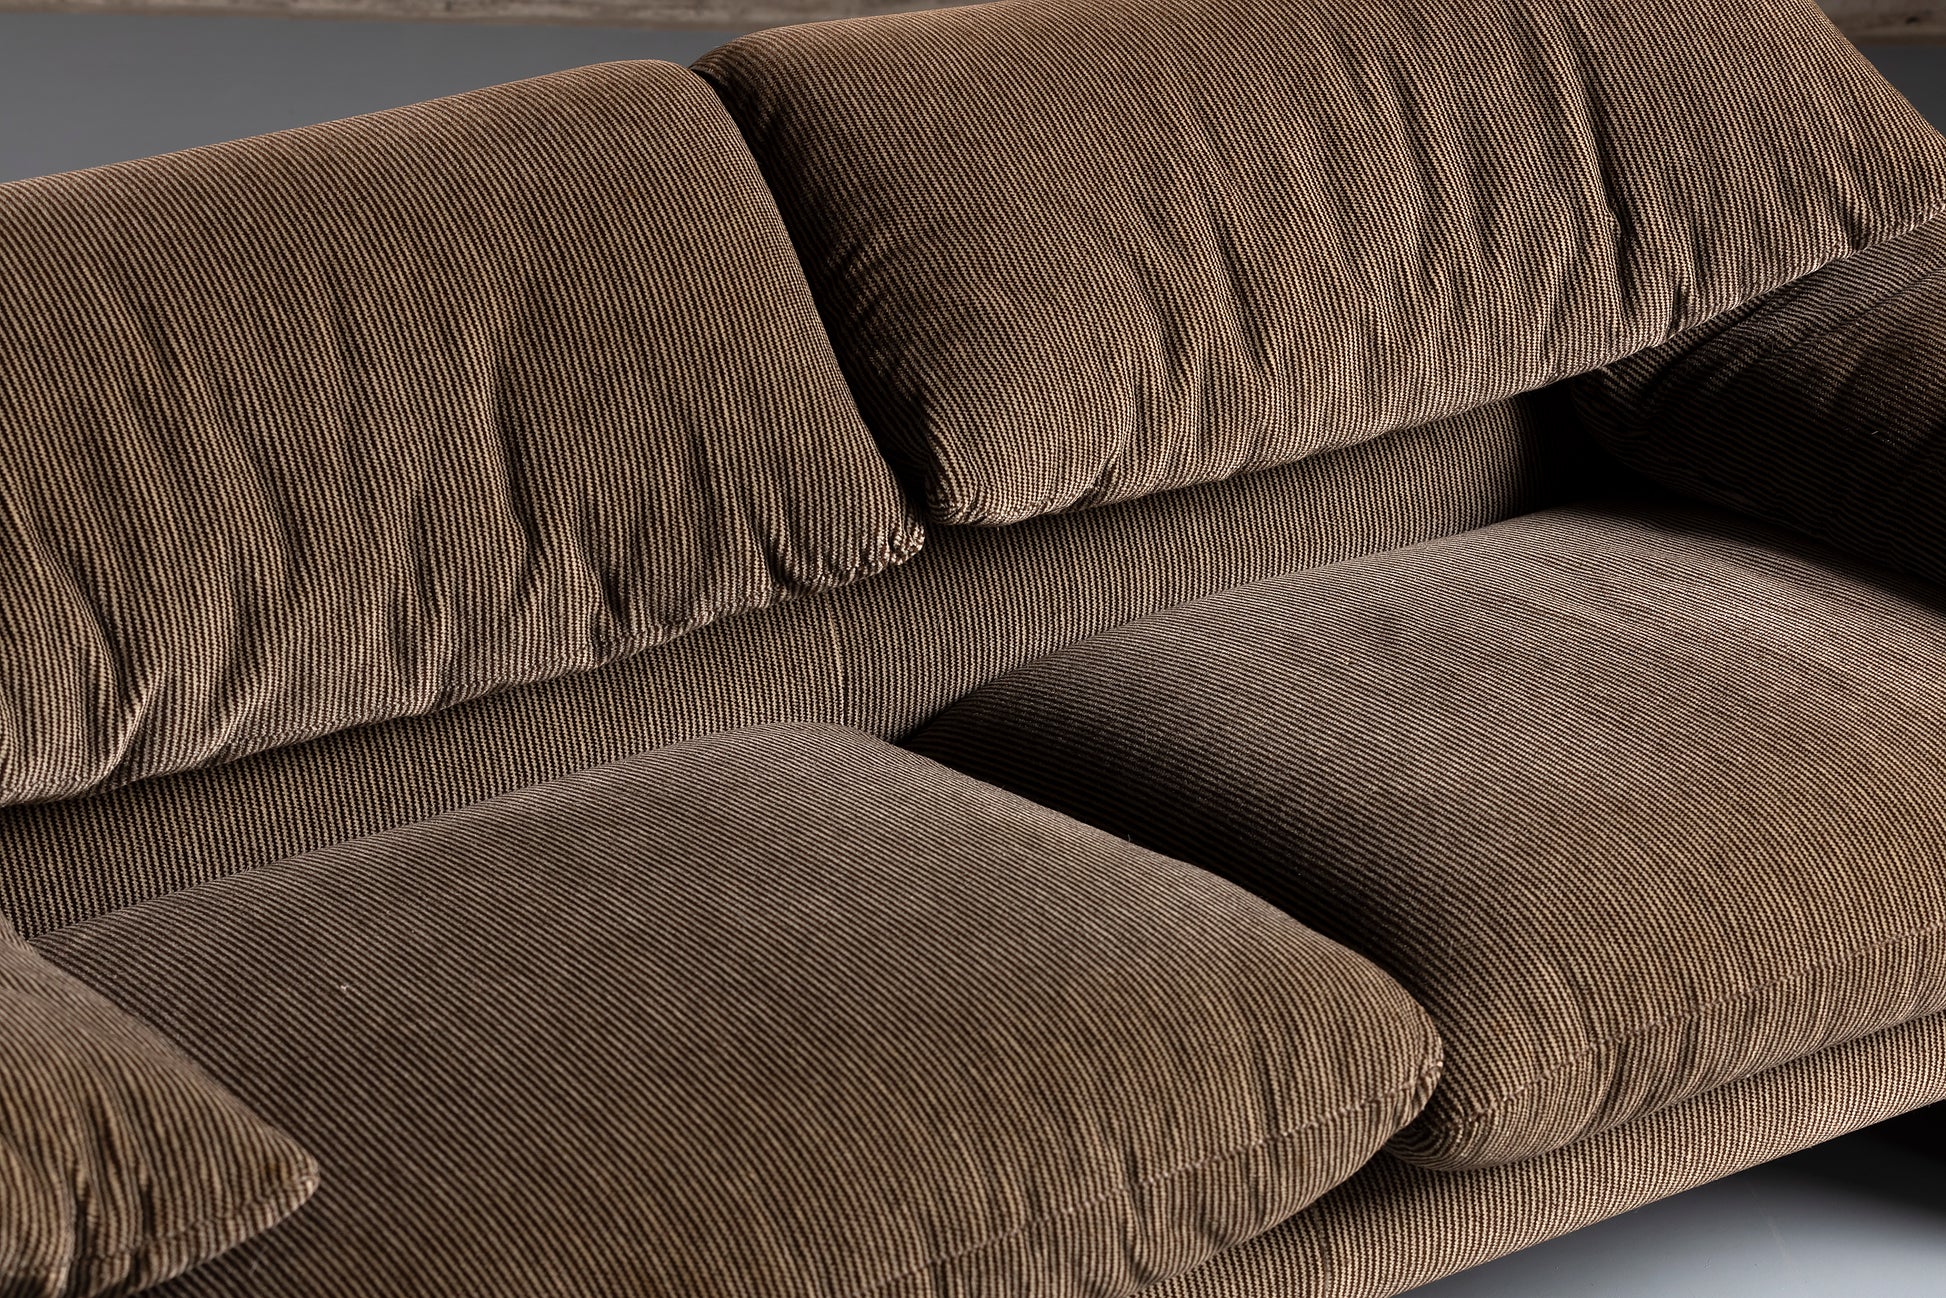  2 seater brown sofa material